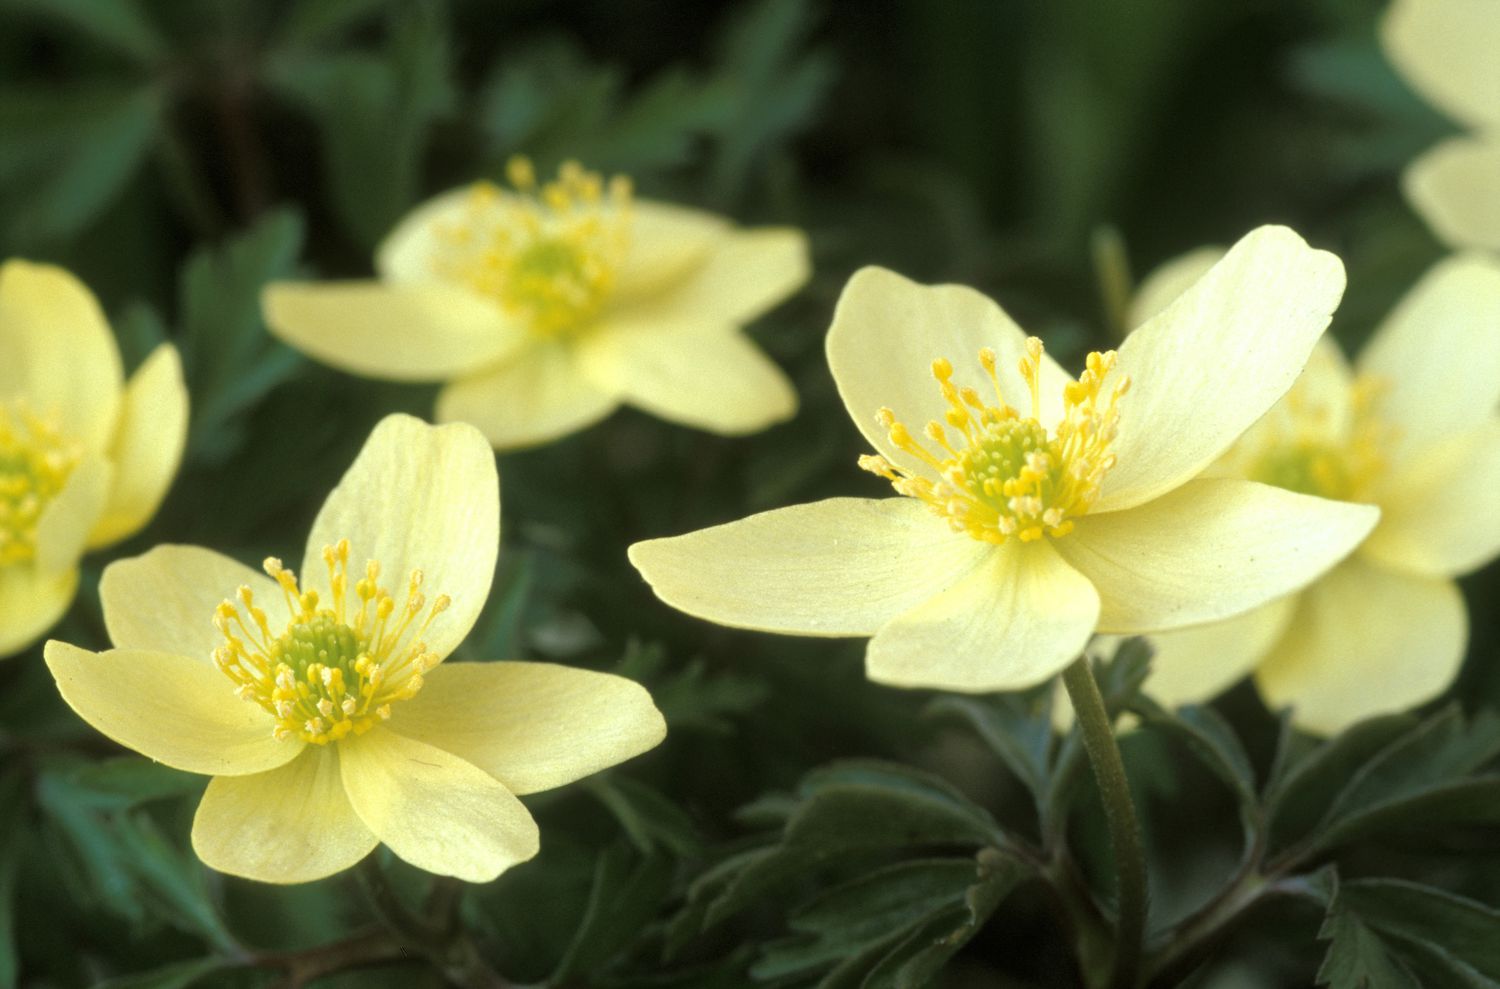 'Pallida' Anemonen mit gelben Blütenblättern